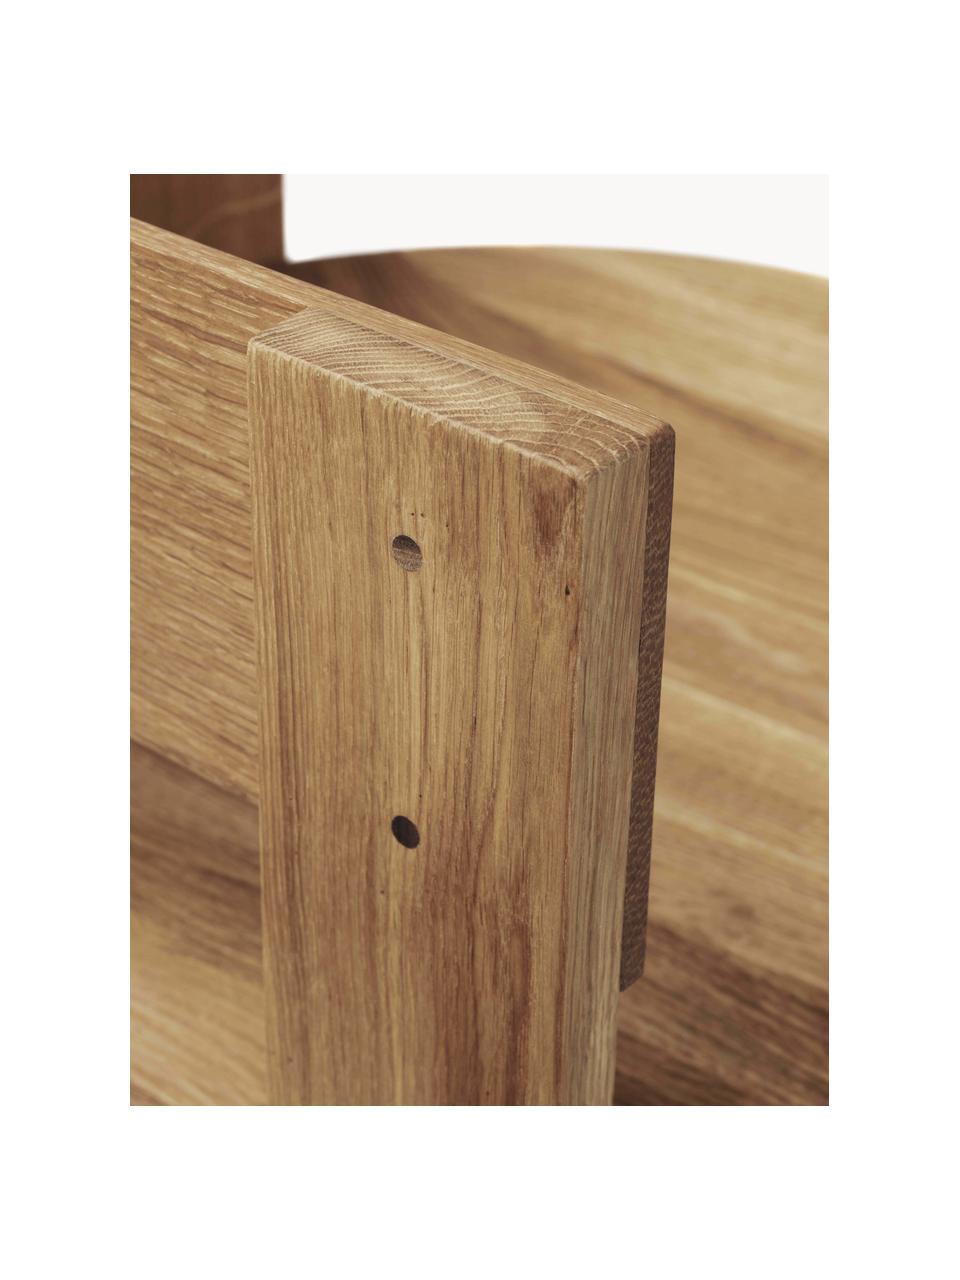 Holz-Armlehnstuhl Collector, Eichen- und Wallnussholz, geölt, Eichenholz, Walnussholz, B 51 x T 51 cm